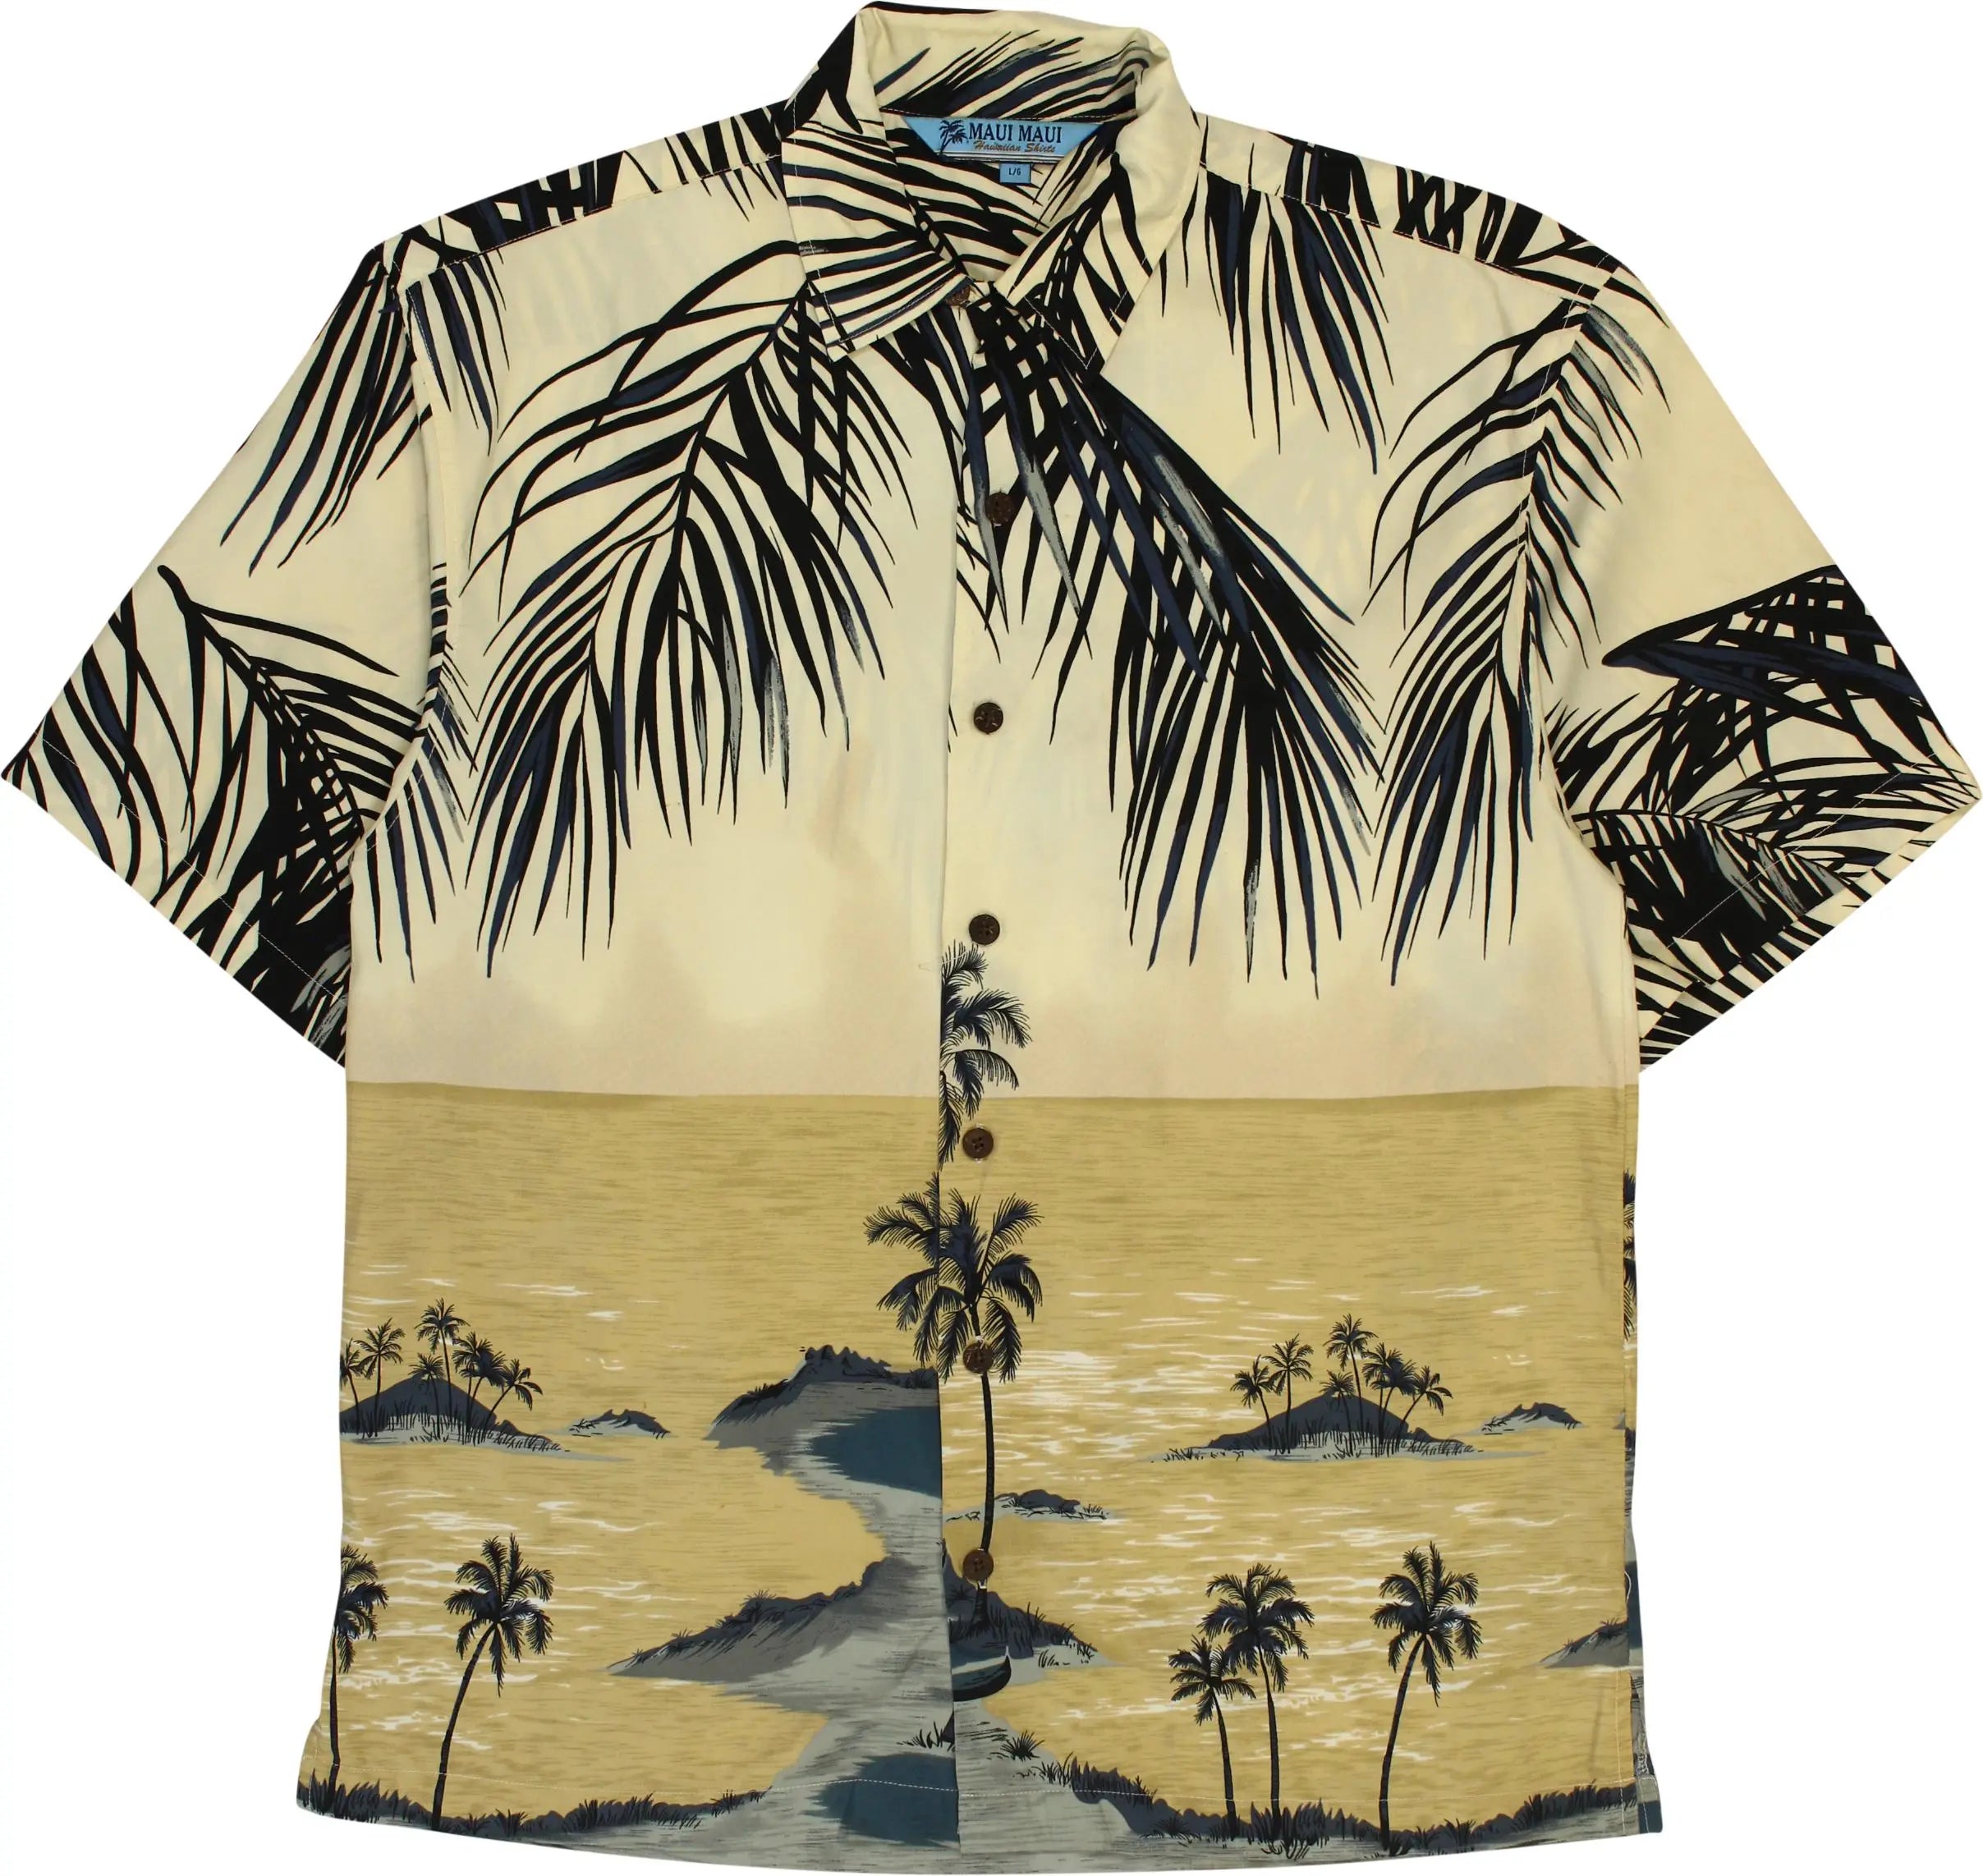 Maui Maui - 90s Hawaiian Shirt- ThriftTale.com - Vintage and second handclothing